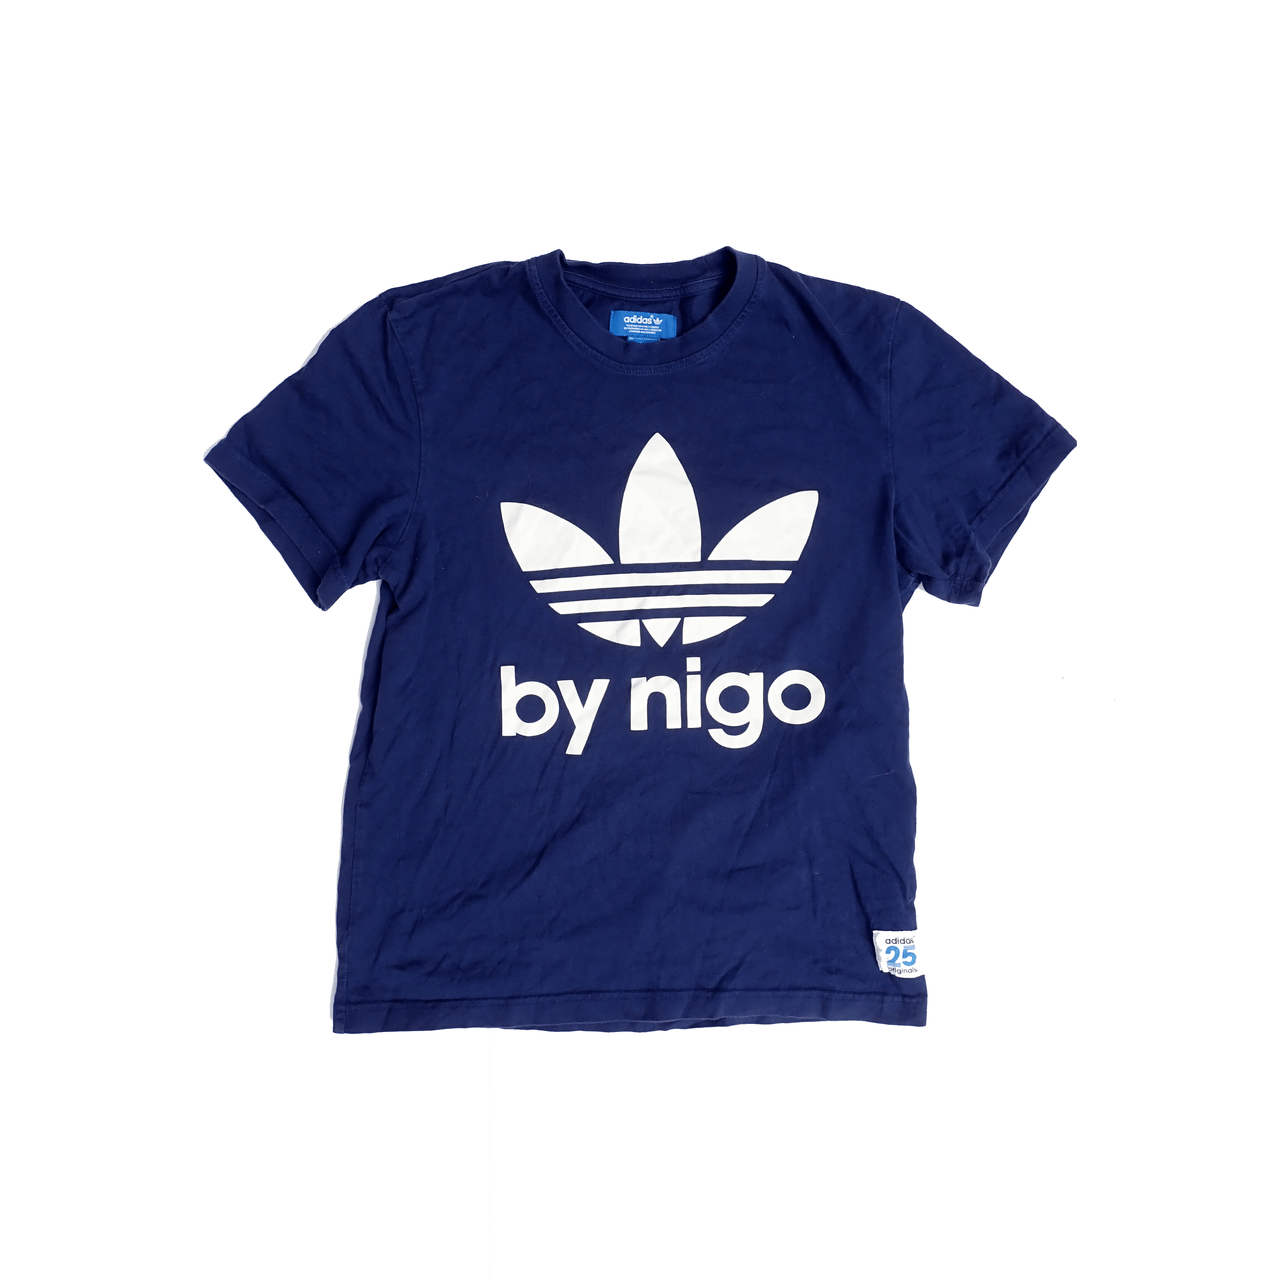 Adidas By Nigo Tshirt